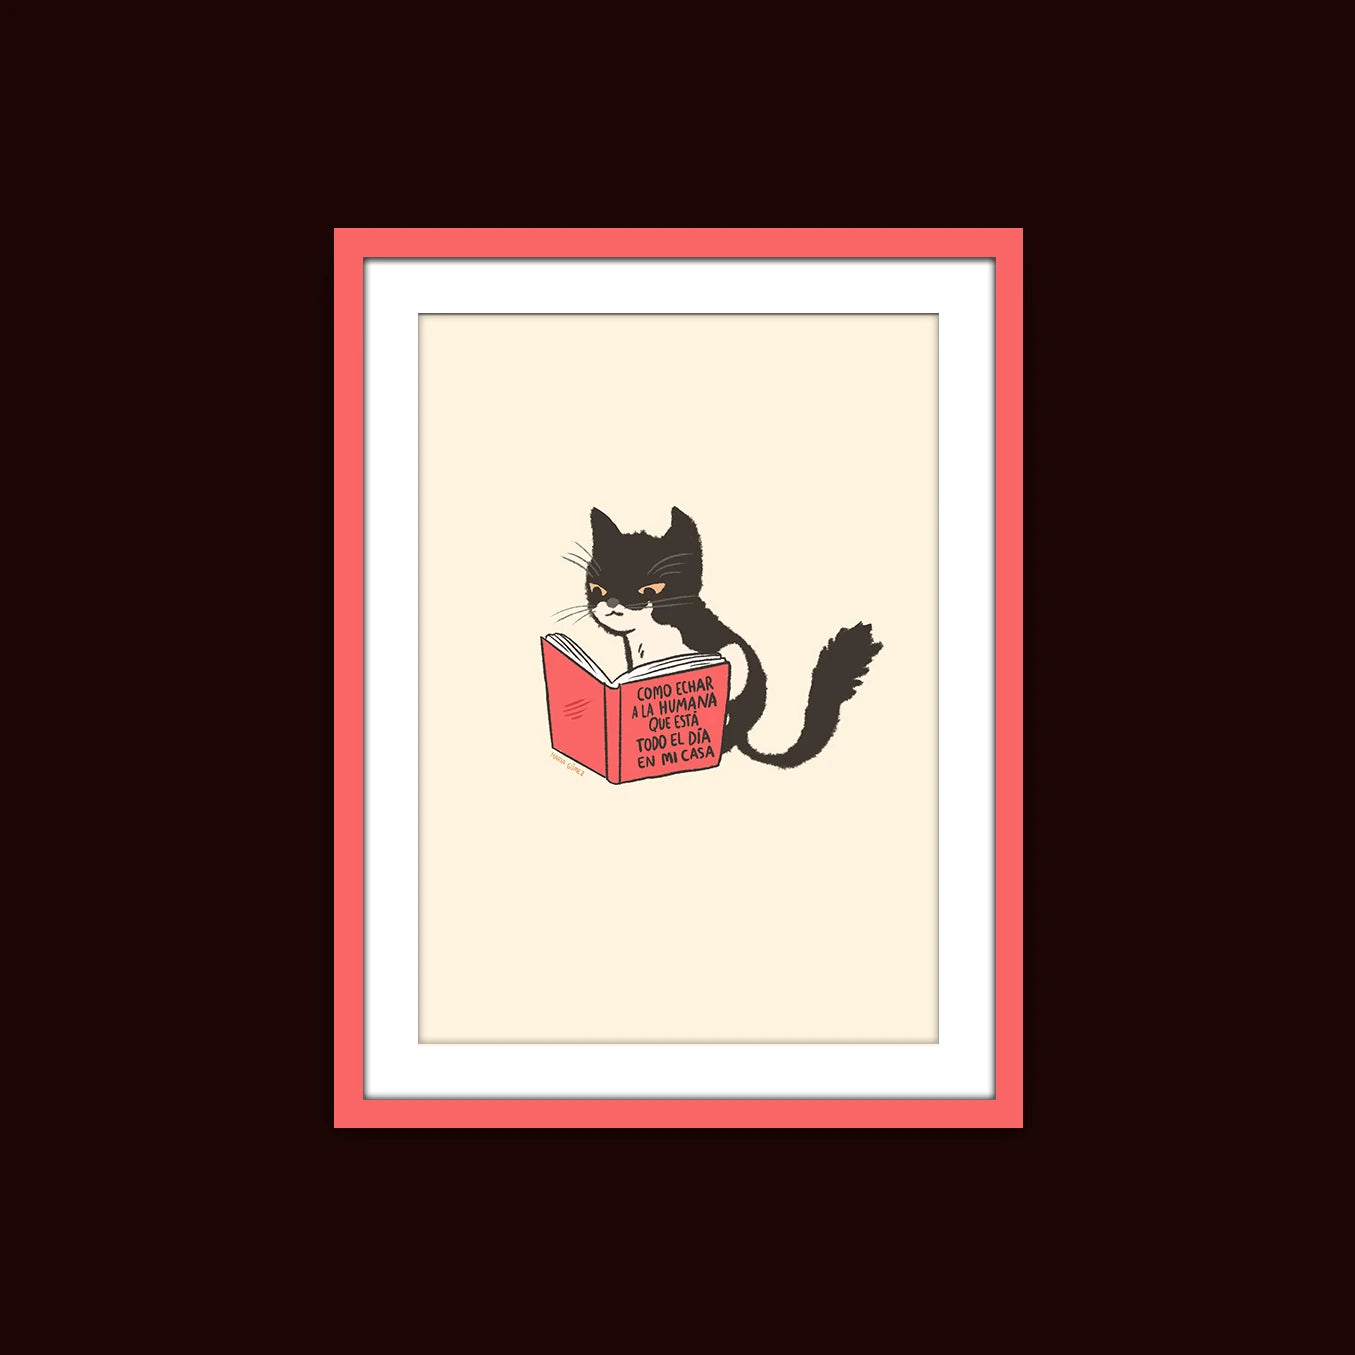 mockup de la ilustración Cómo echar a la humana de María Gómez, de un gato blanco y negro leyendo el libro. Ilustración enmarcada en un cuadro rojo  sobre un fondo granate